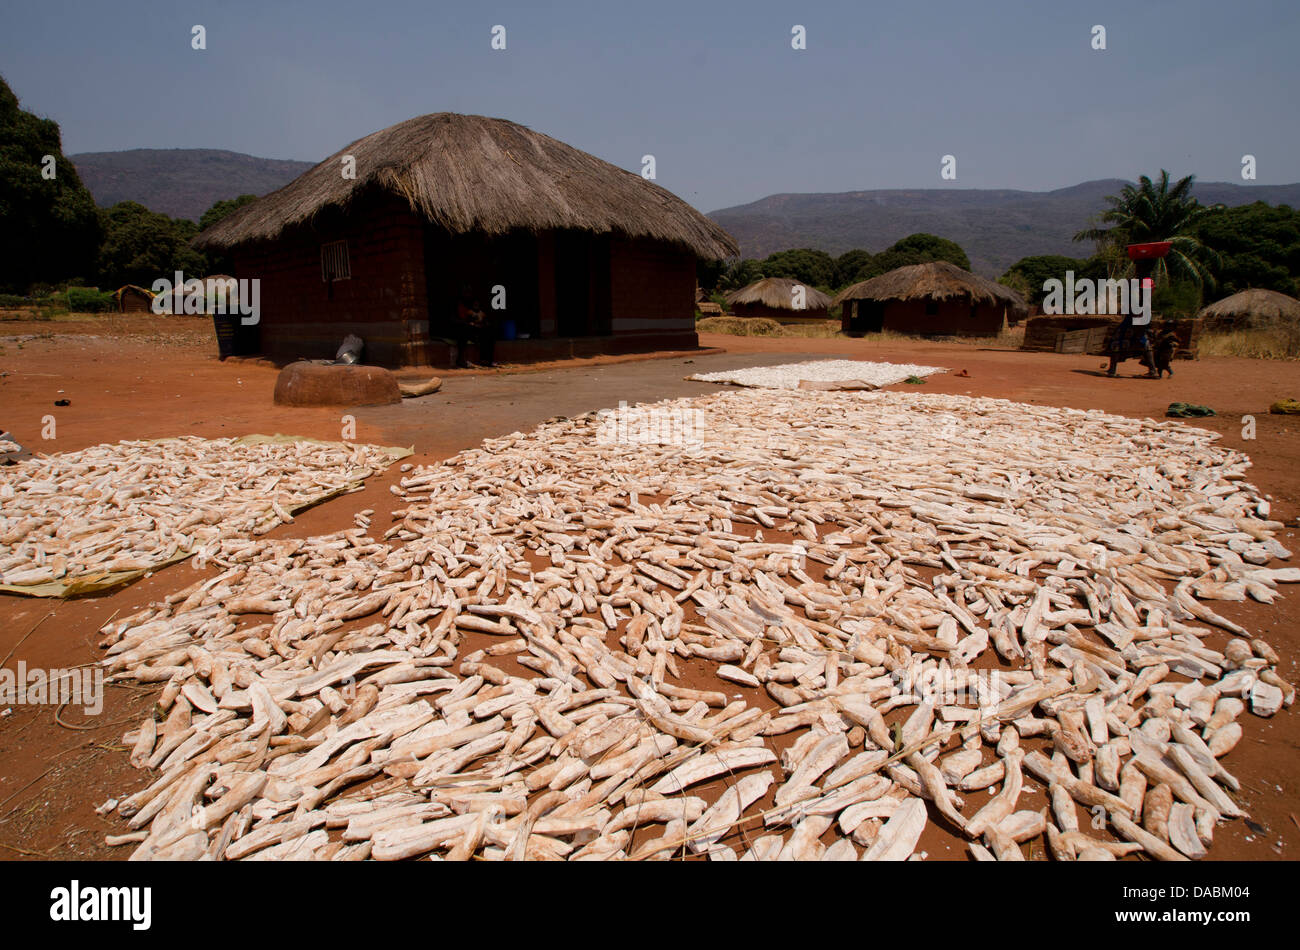 Le séchage du manioc au soleil, Talpia, Zambie, Afrique Banque D'Images